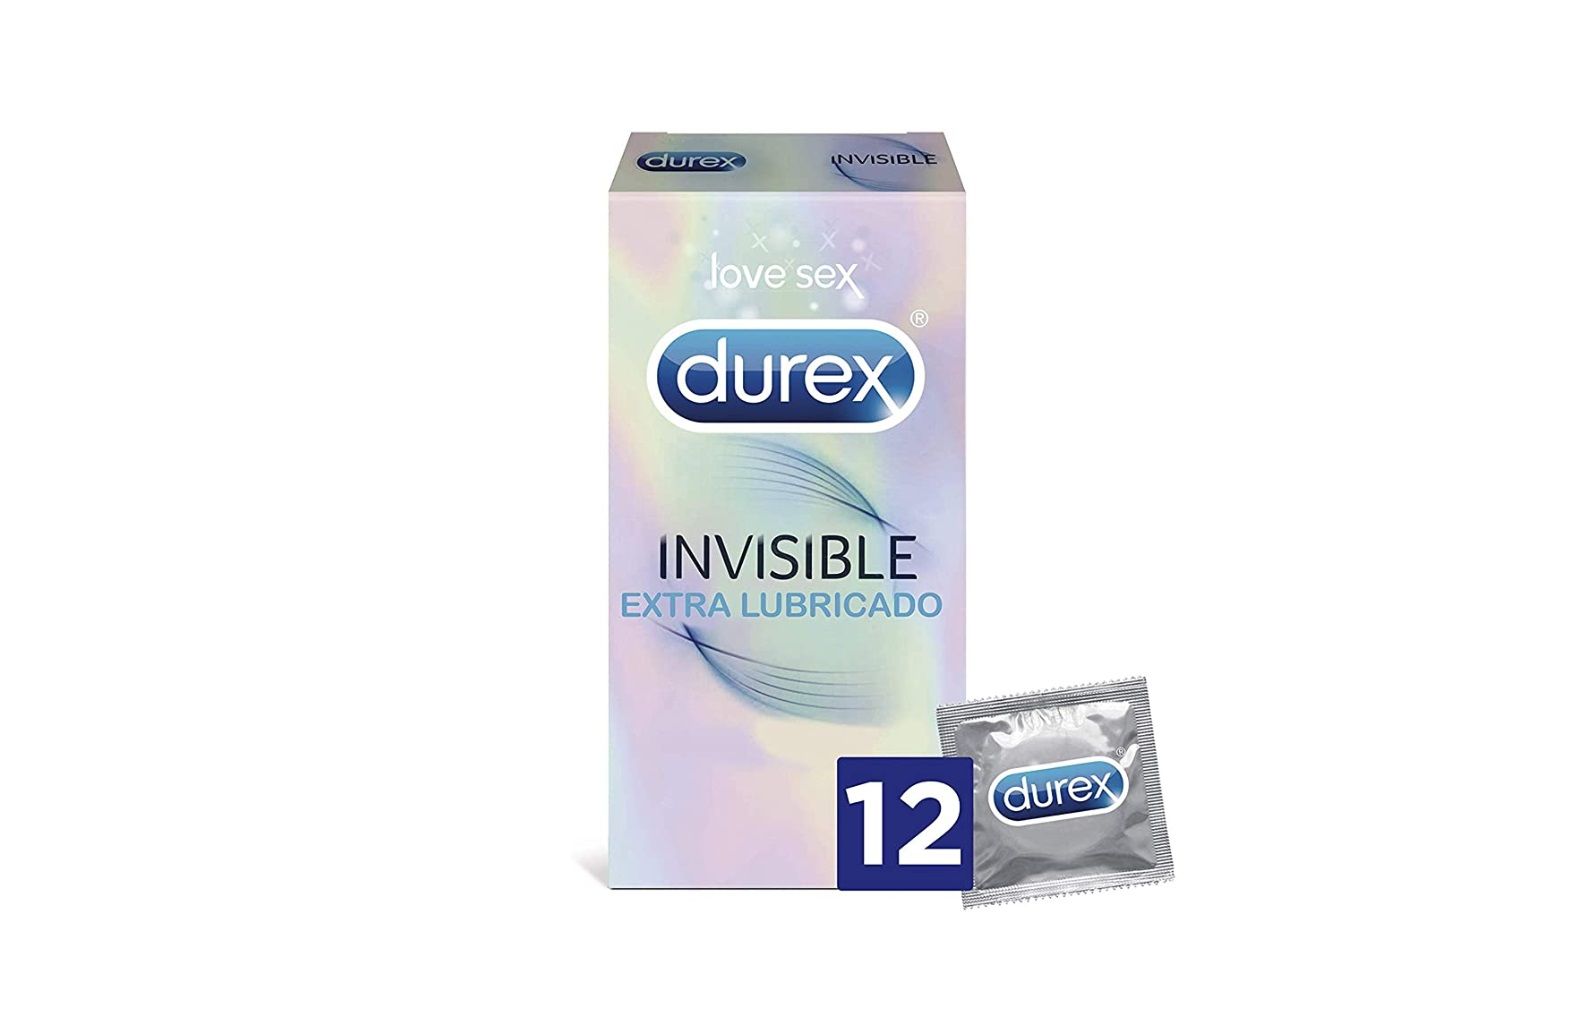 ¡Chollo! 12 preservativos Durex Invisible Extra Lubricado por sólo 6,27€ (antes 12,52€)